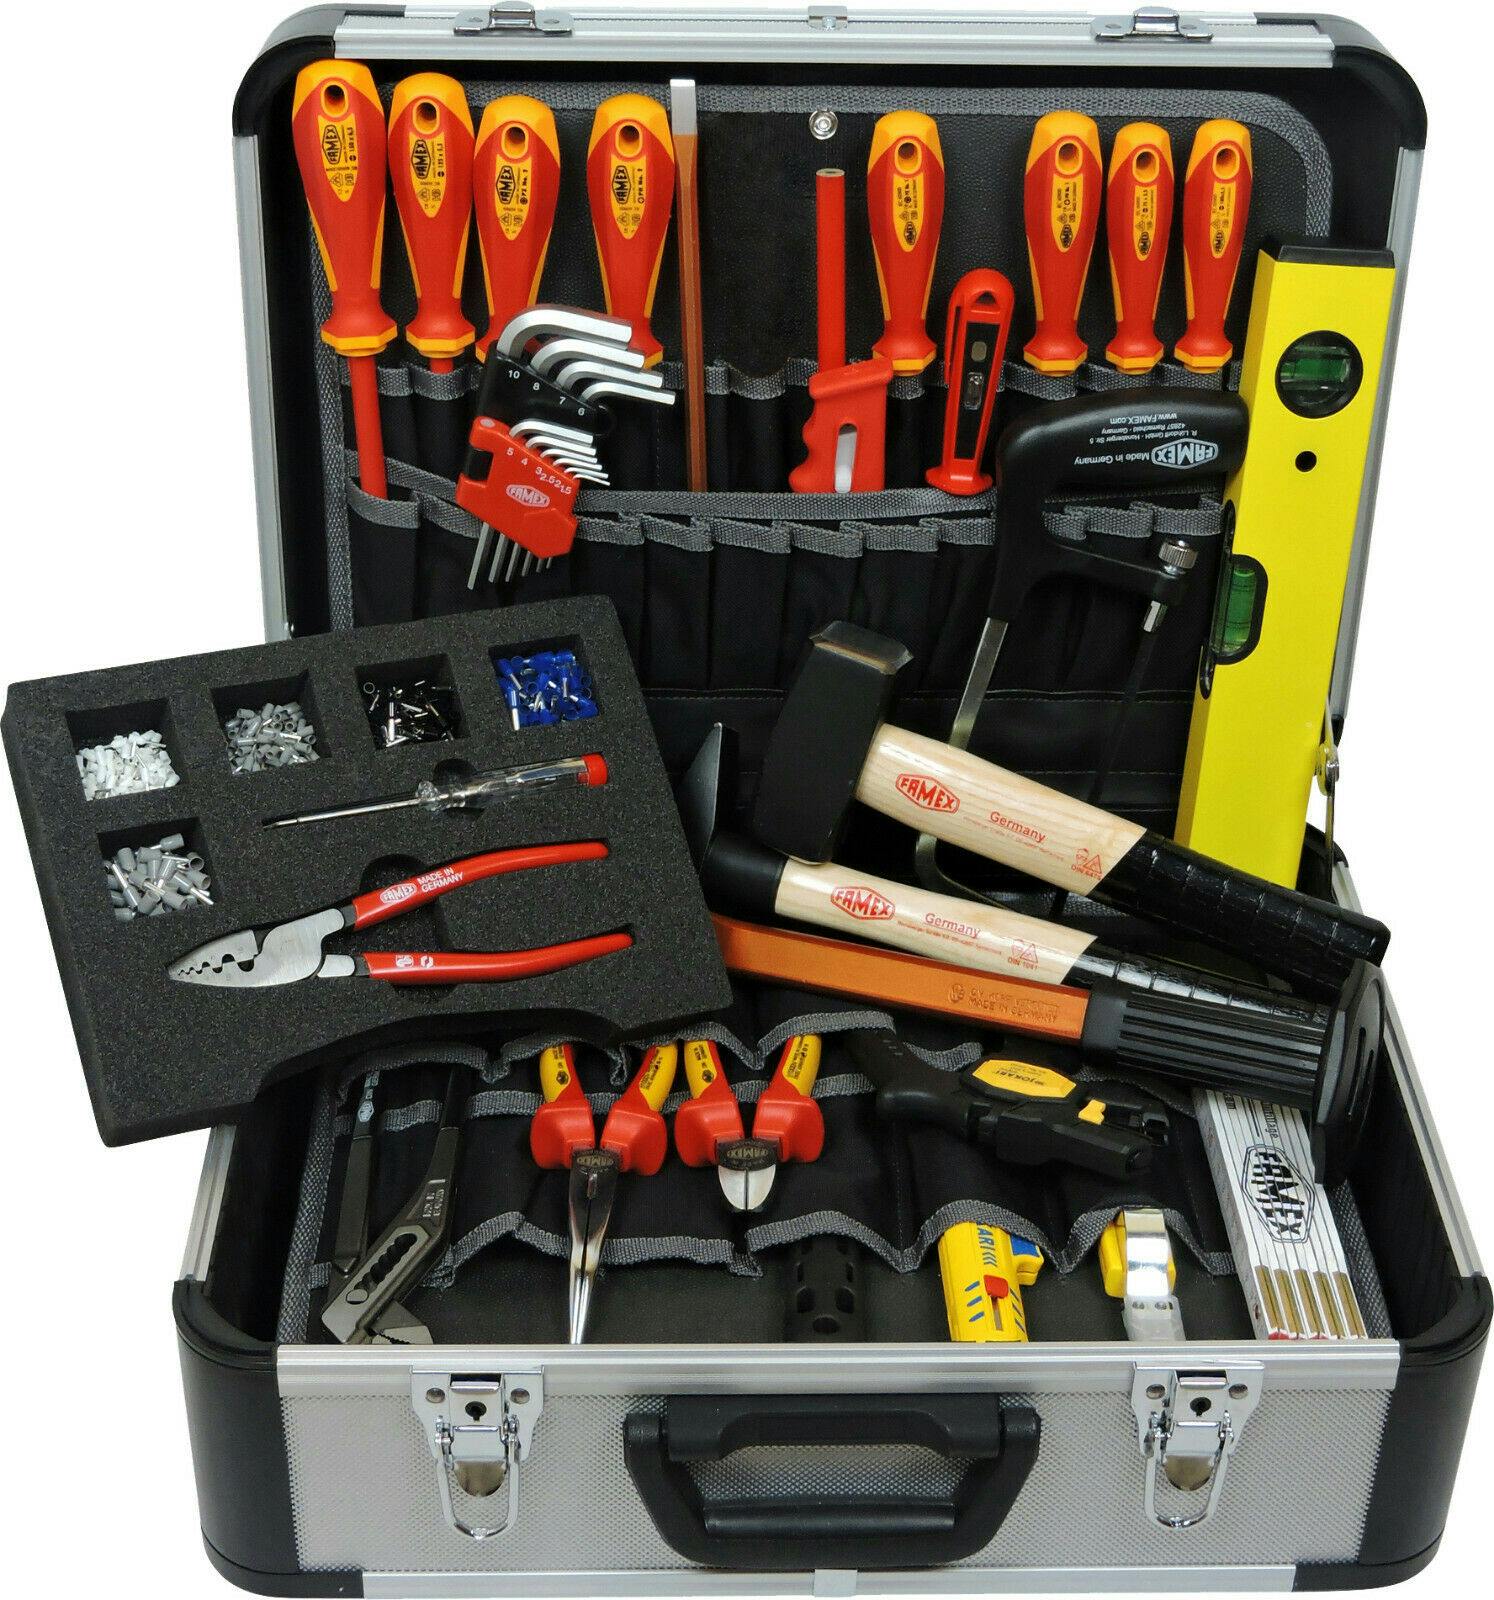 FAMEX 436-10 Elektriker - Profi Qualität | mit Top METRO Werkzeugkiste Werkzeug Set Marktplatz Werkzeugkoffer - gefüllt